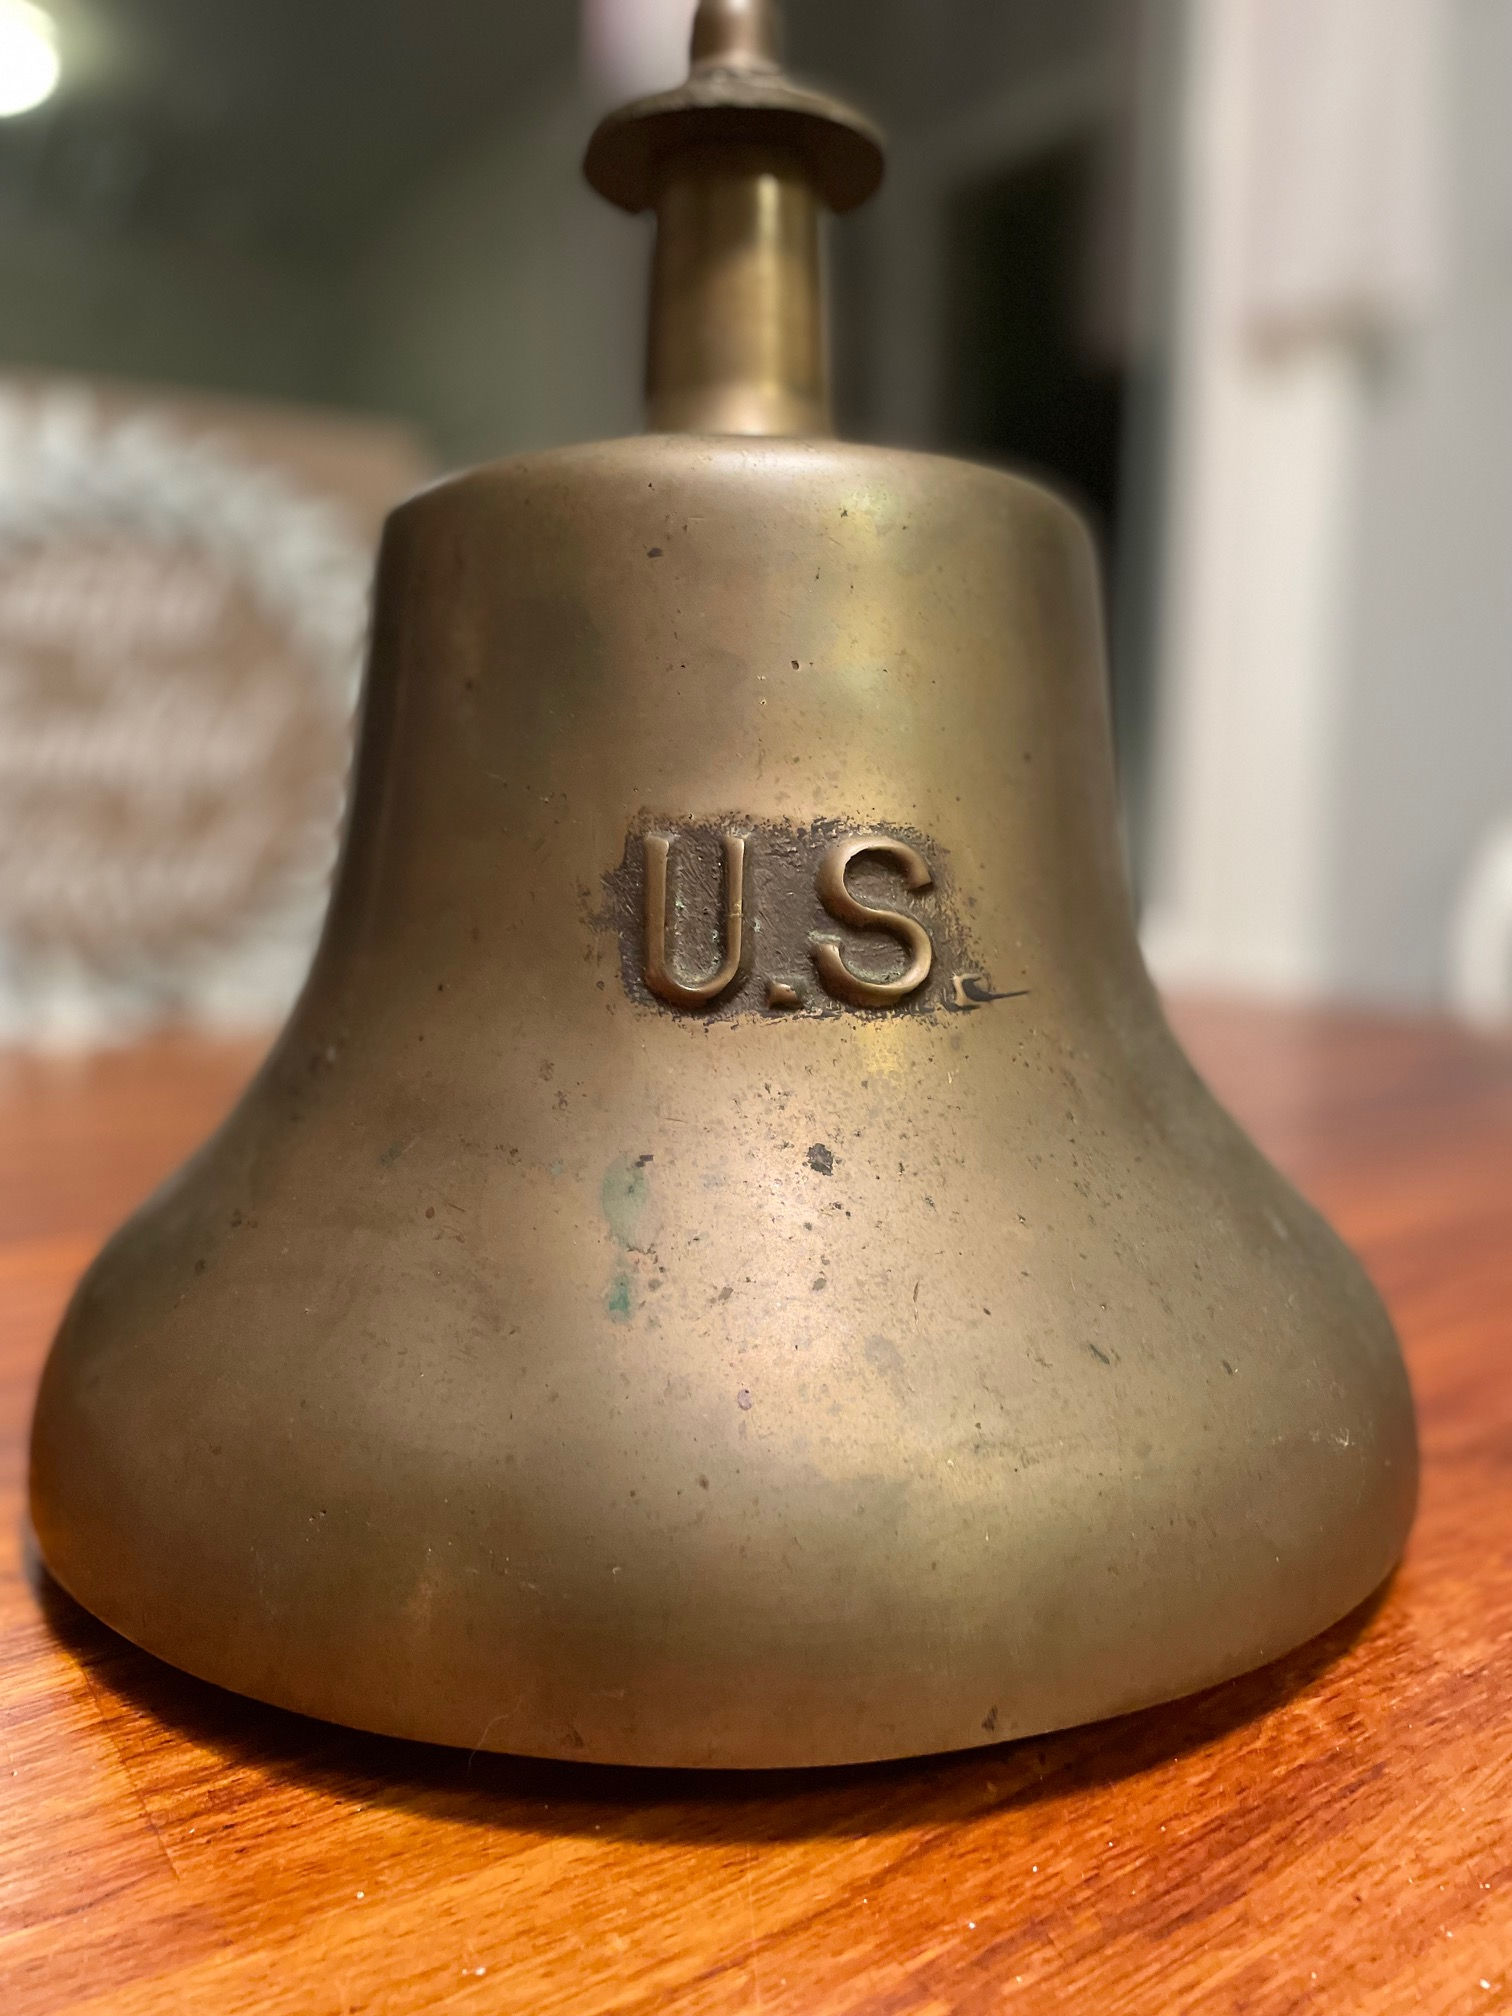 U.S. Navy Brass Bell, Vintage, Navy Memorabilia, Vintage Navy, Sailor Gift,  Nautical Vintage, Vintage Brass Bell, U.S.N., Navy Collectibles 